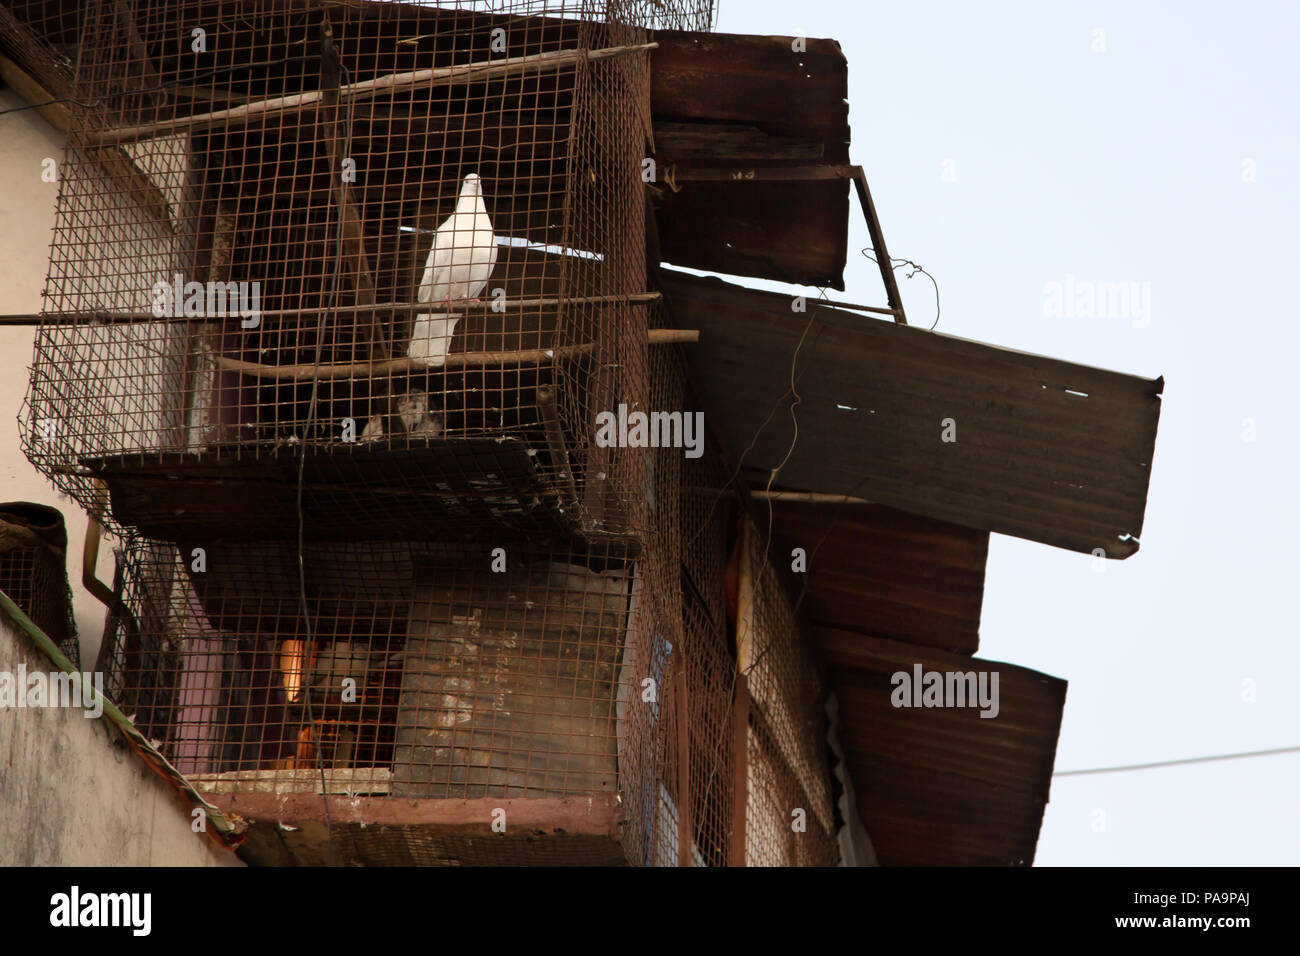 Paloma Blanca en una jaula con Arif Nagar abandonados area, cerca del complejo industrial, Union Carbide en Bhopal, India Foto de stock